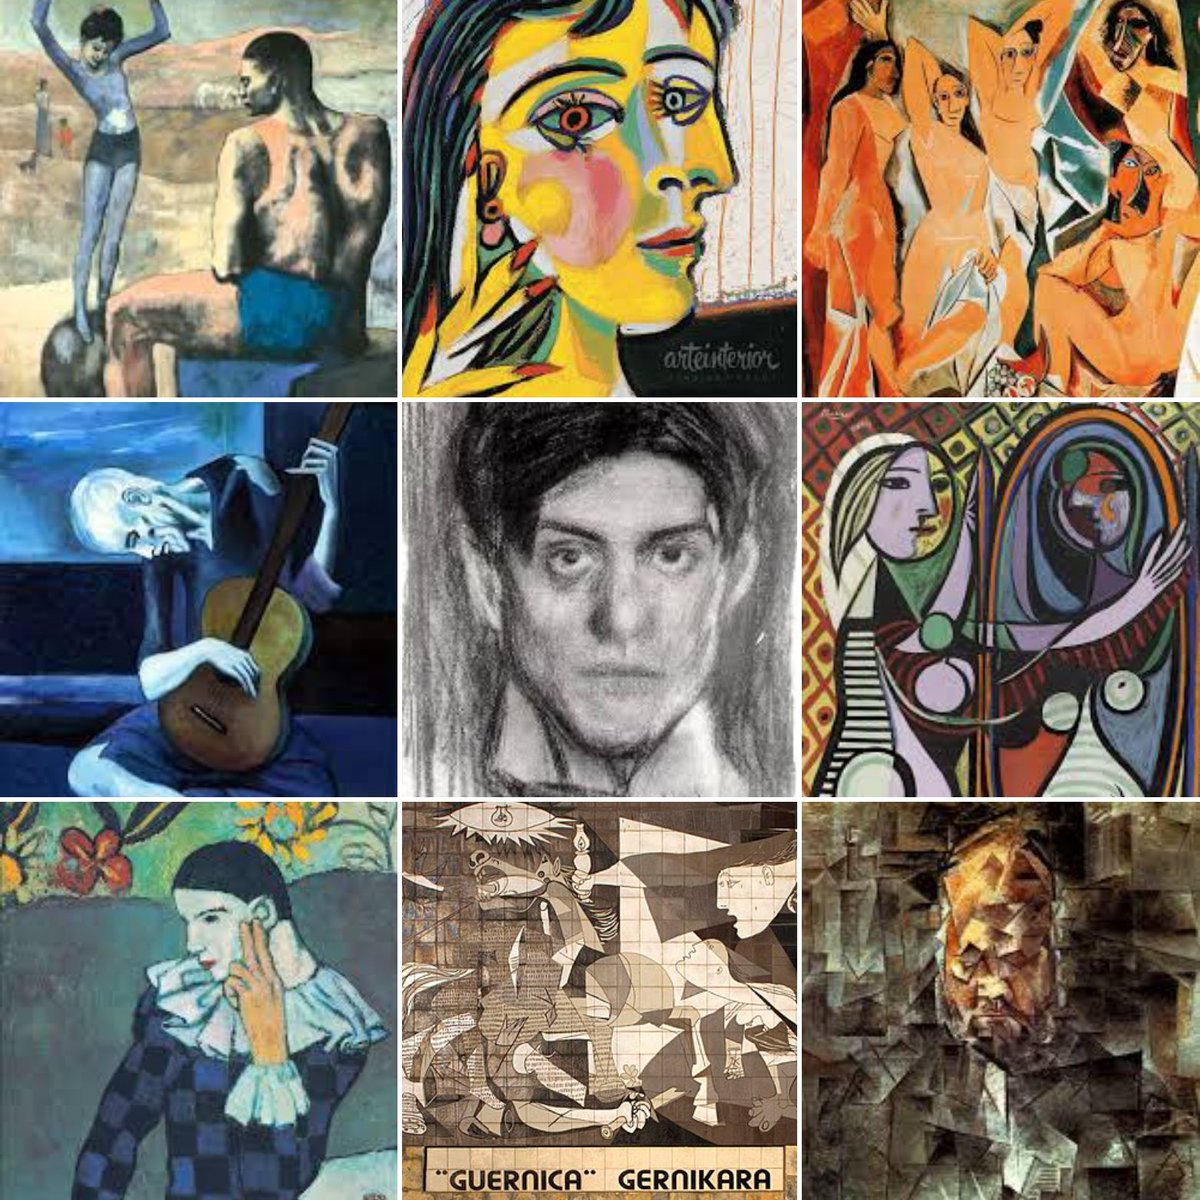 Il genio artistico di #PabloPicasso (Malaga, 25 ottobre 1881 – Mougins, #8aprile 1973) di cui oggi ricorre il 51° anniversario della scomparsa